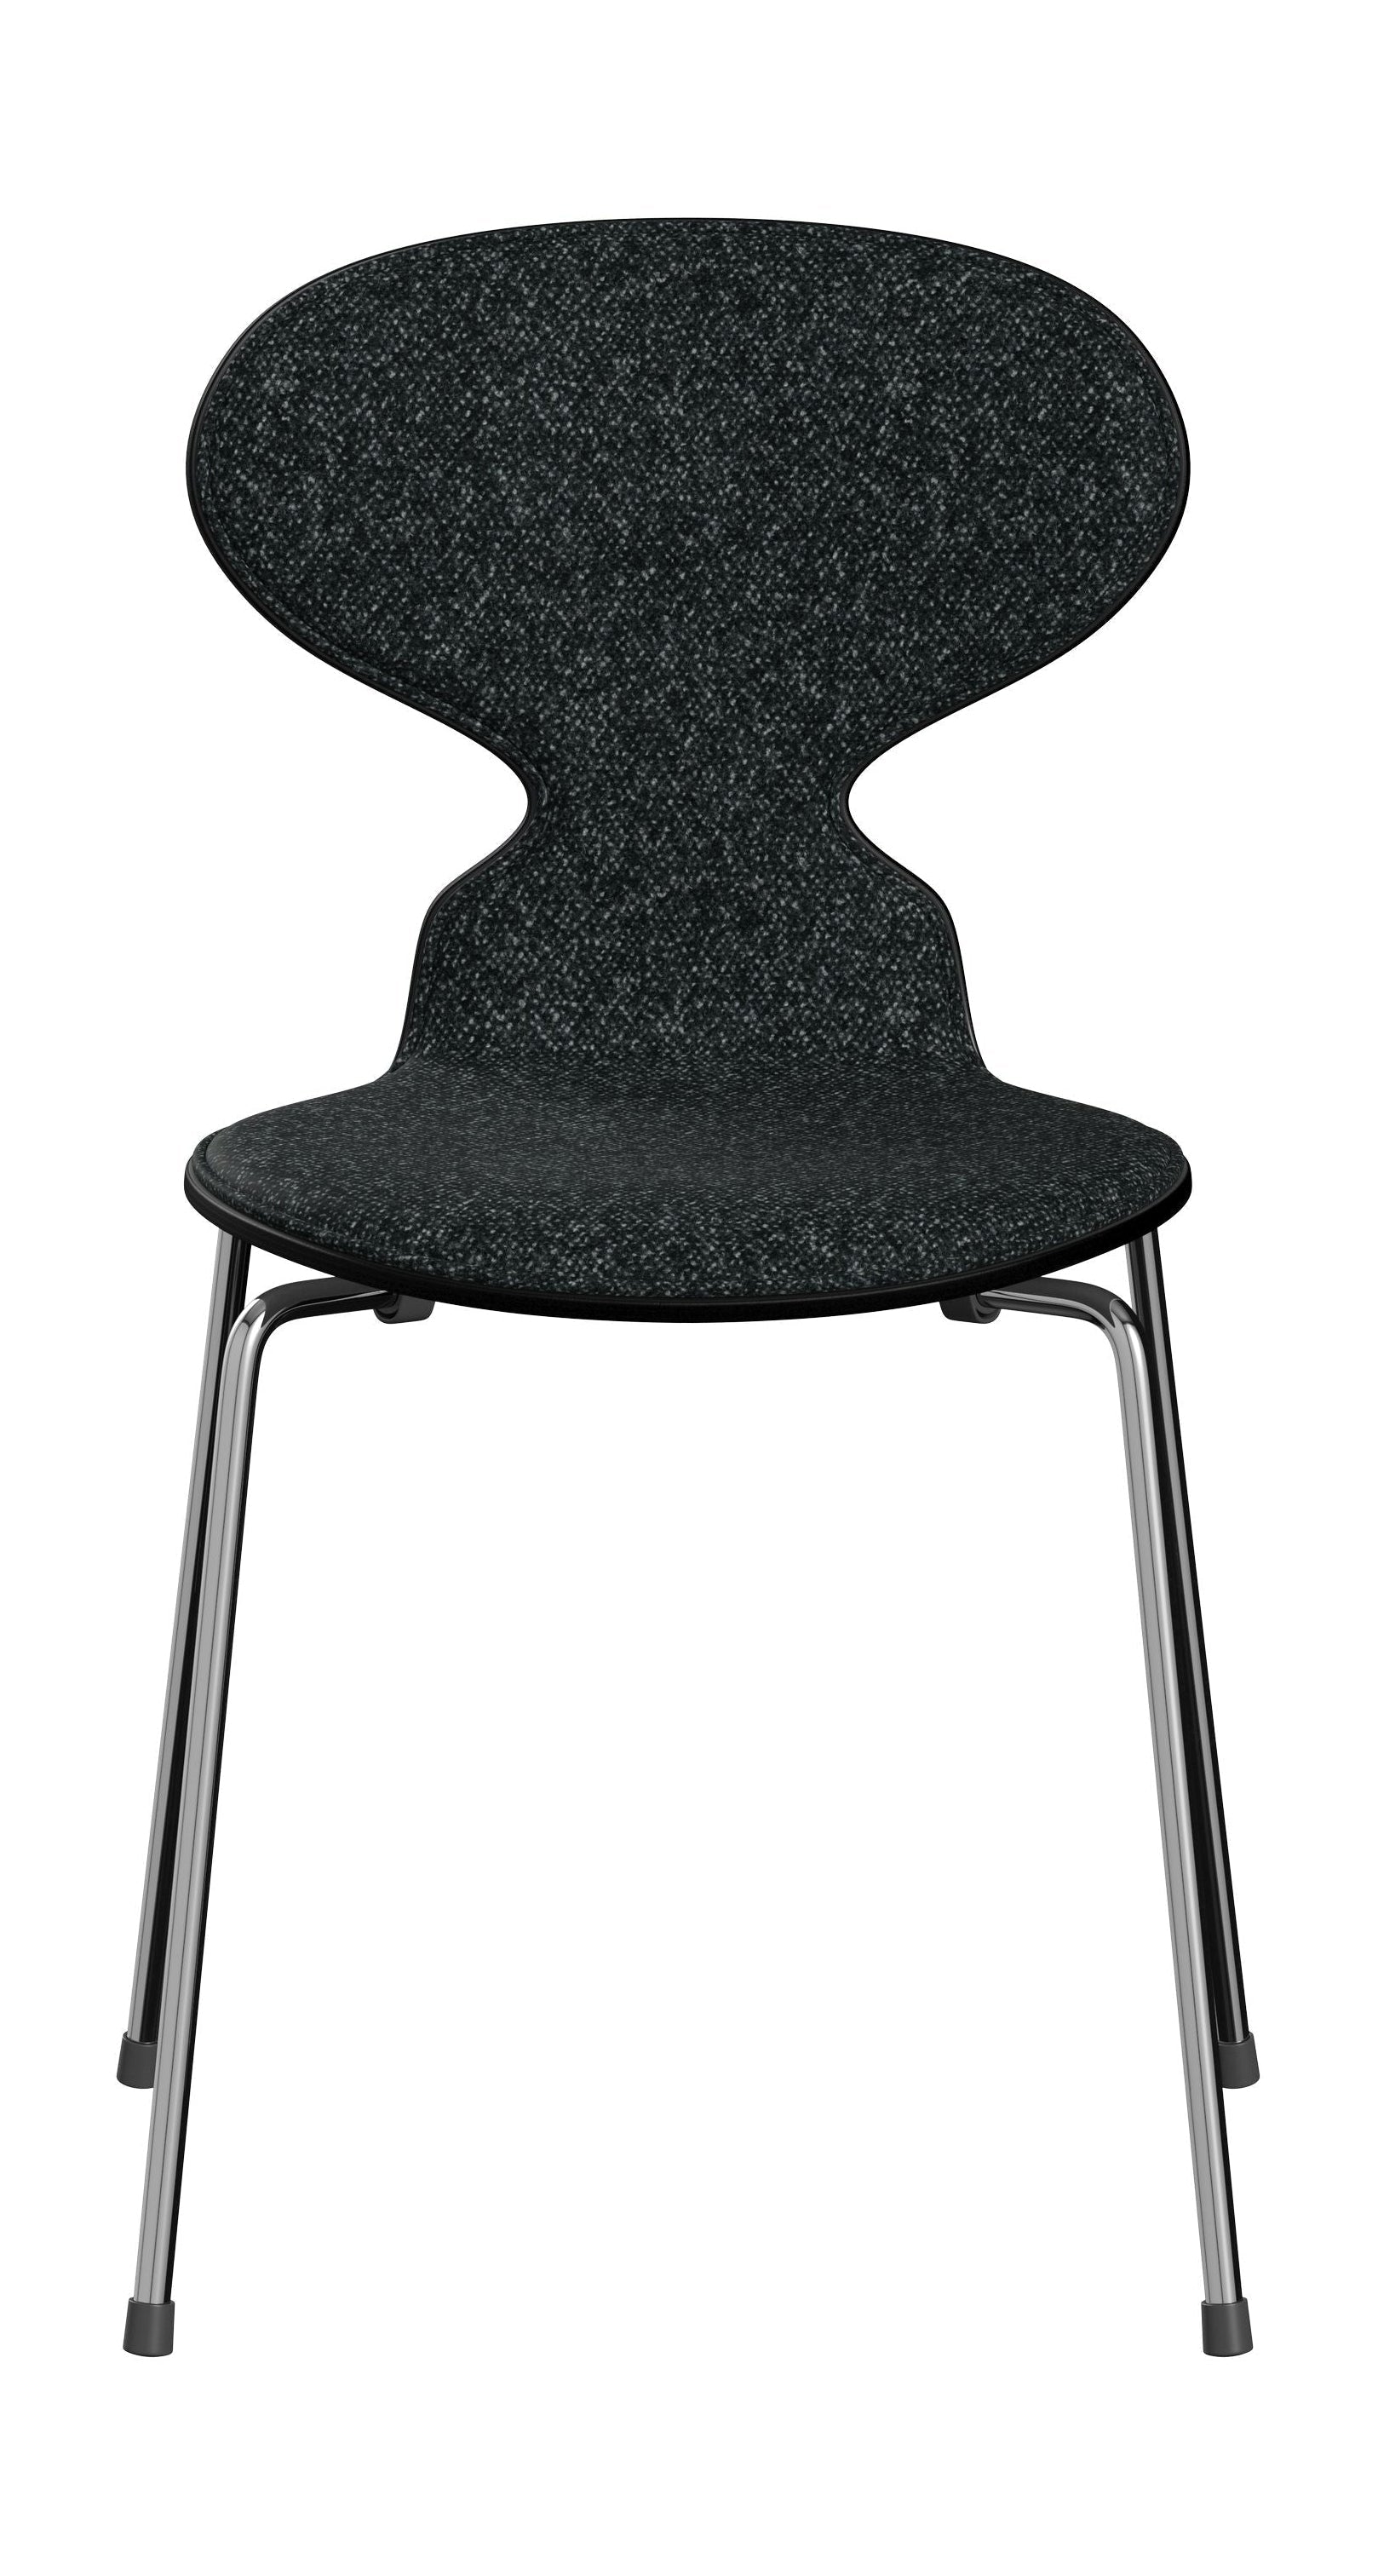 Fritz Hansen 3101 Antstoel voorste bekleding, schaal: gekleurd fineer zwart, bekleding: vanir textiel zwart/grijs, basis: staal/chroom